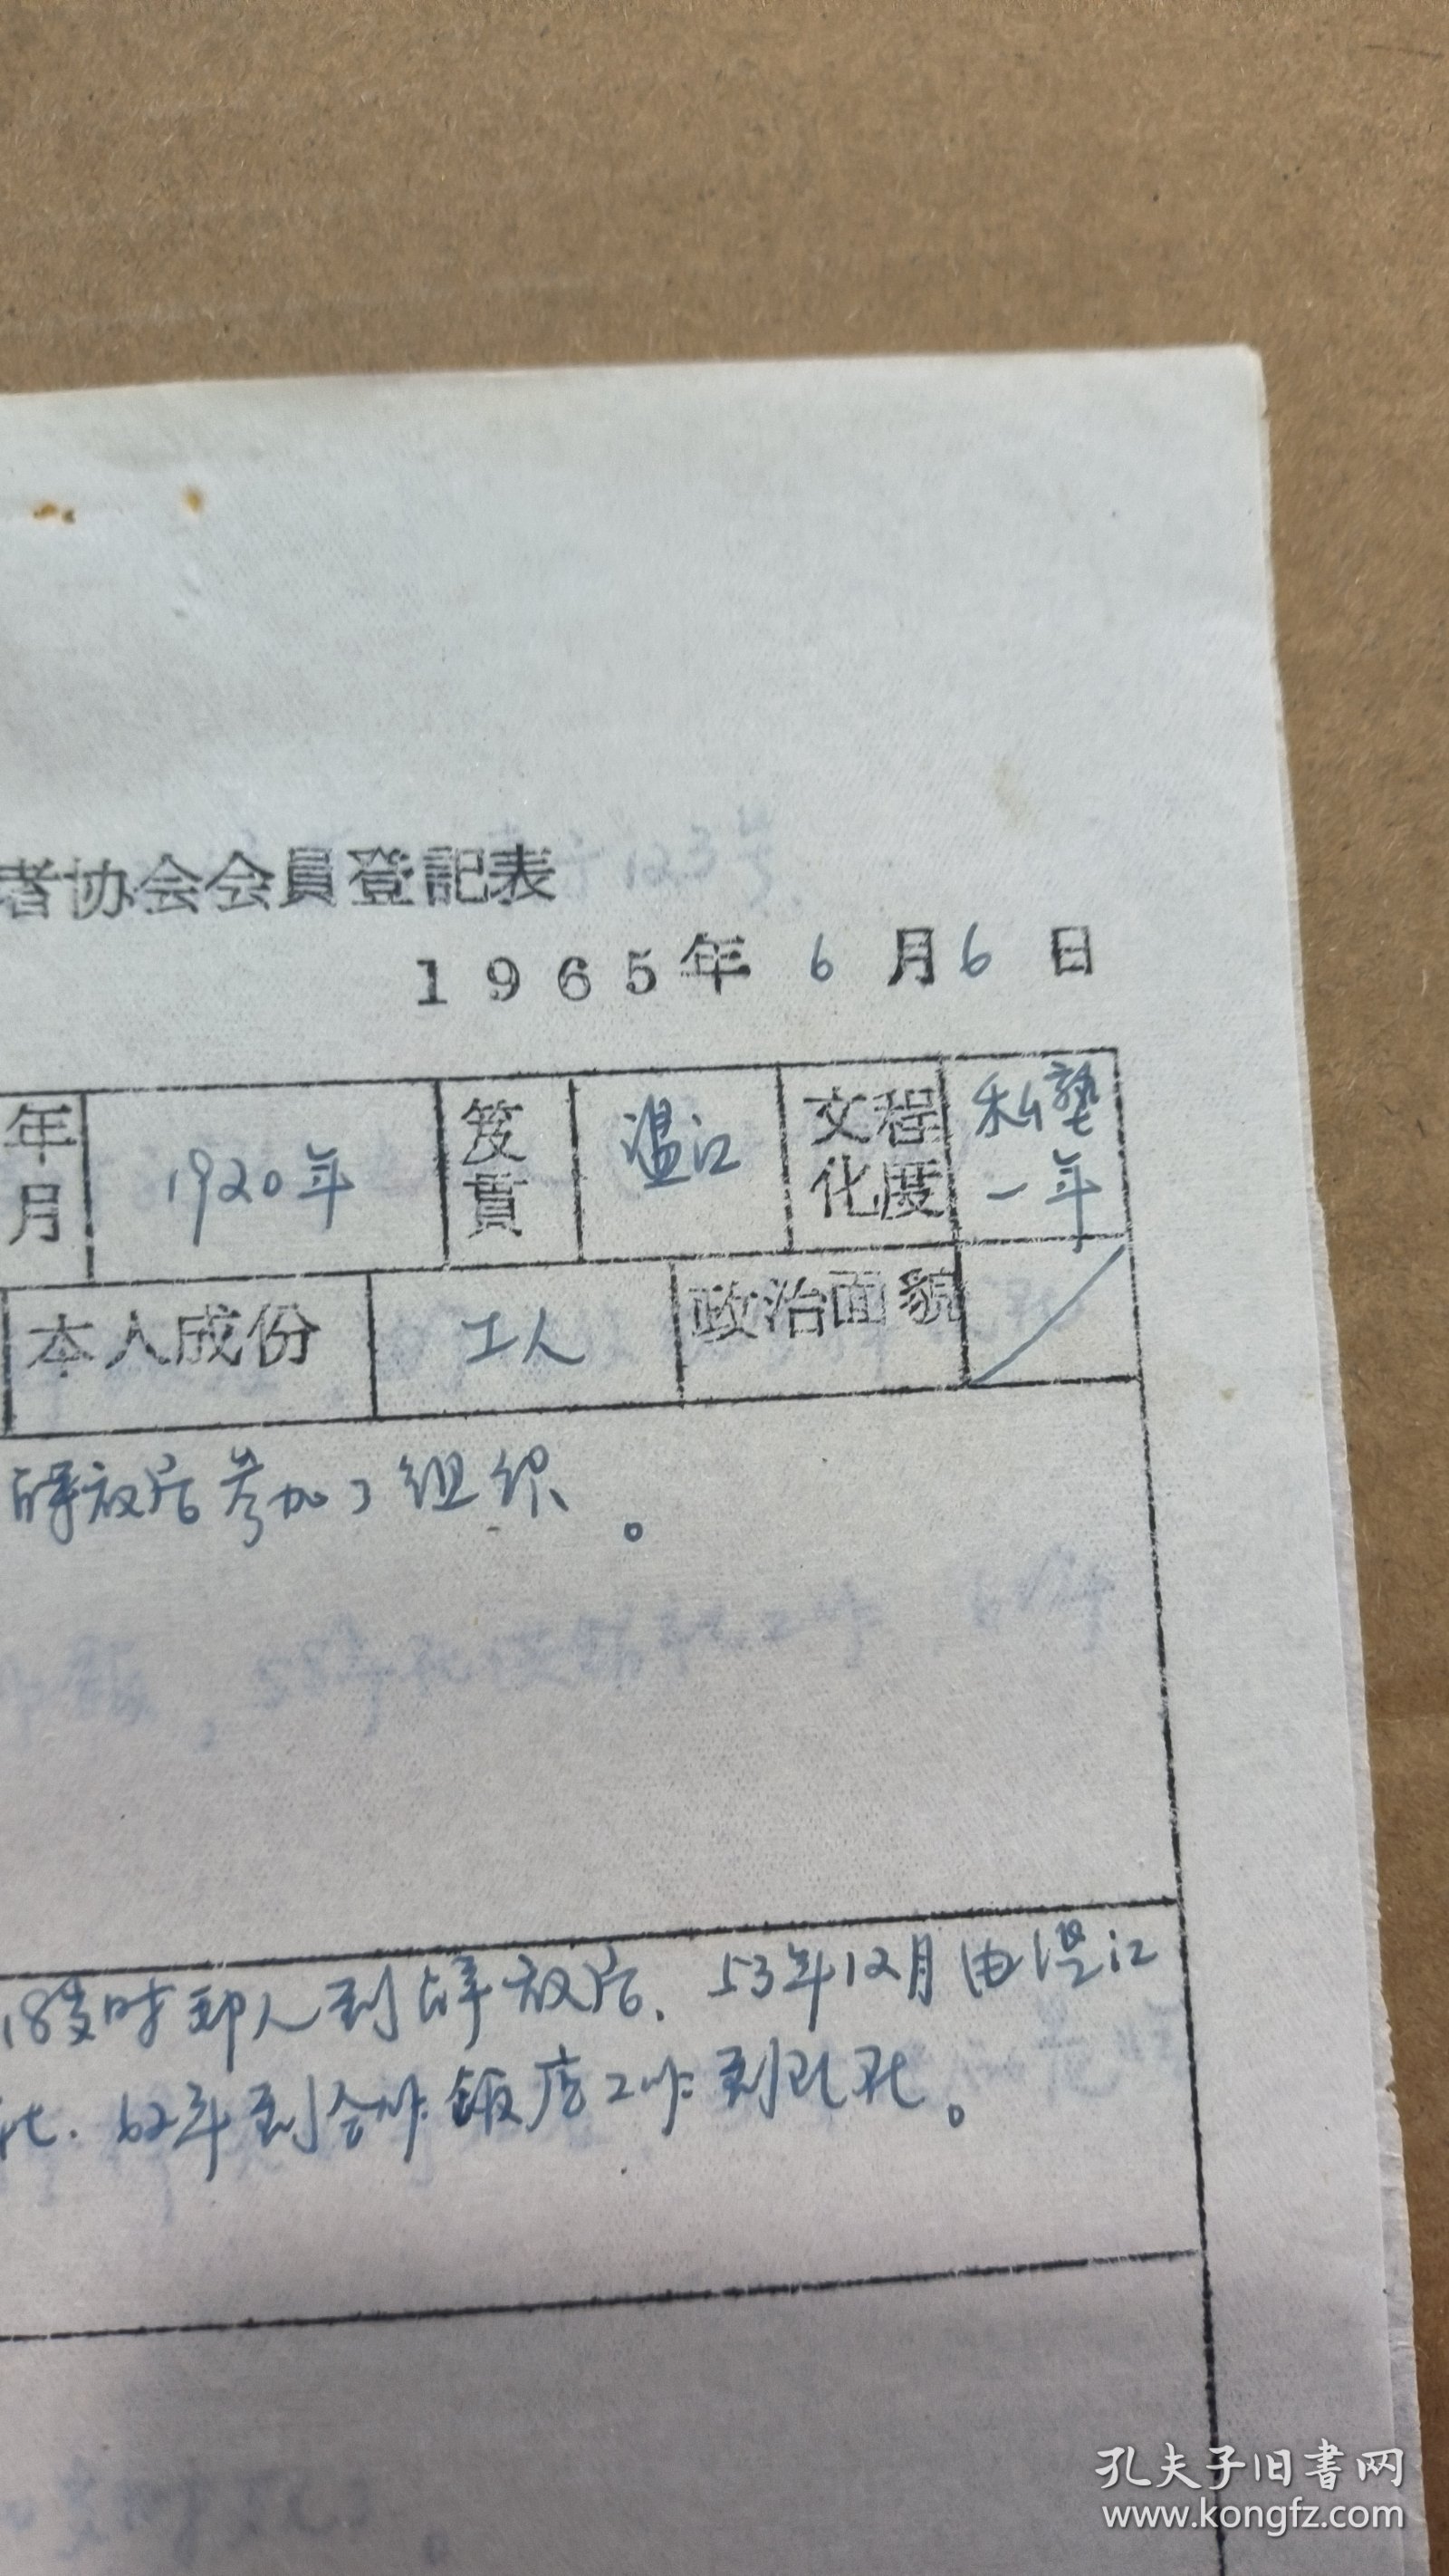 手稿2556，四川成都苏坡场镇贫苦劳动者协会会员登记表，2页